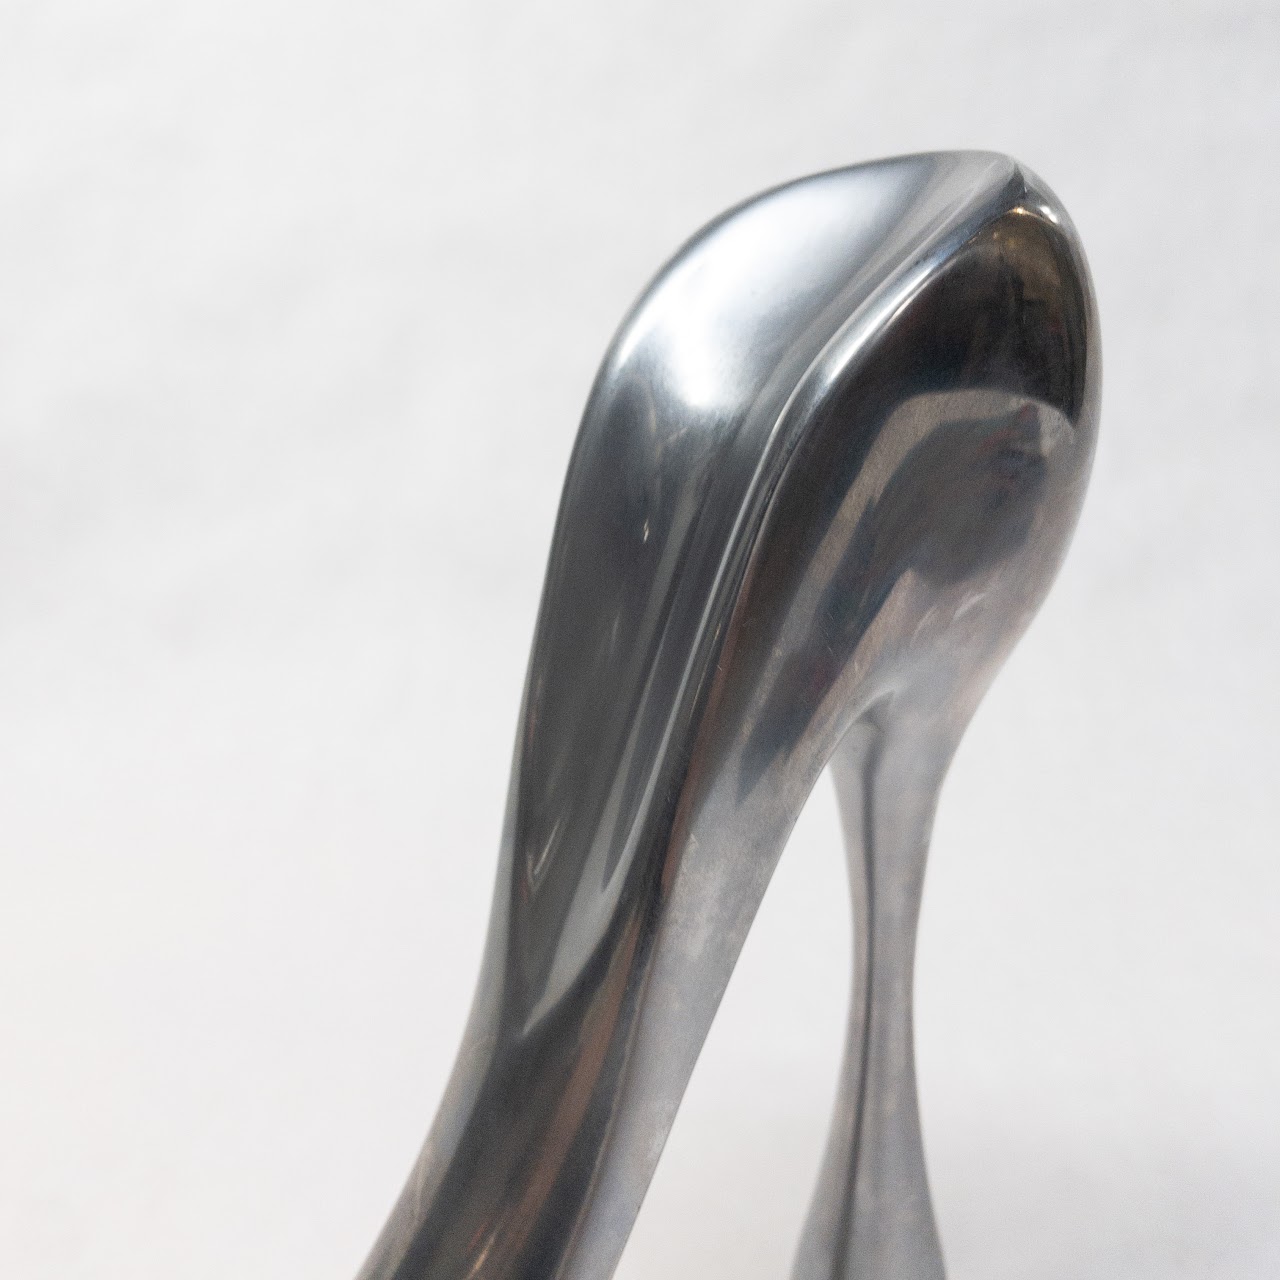 Manolo Blahnik Cast Aluminum Shoe Horn